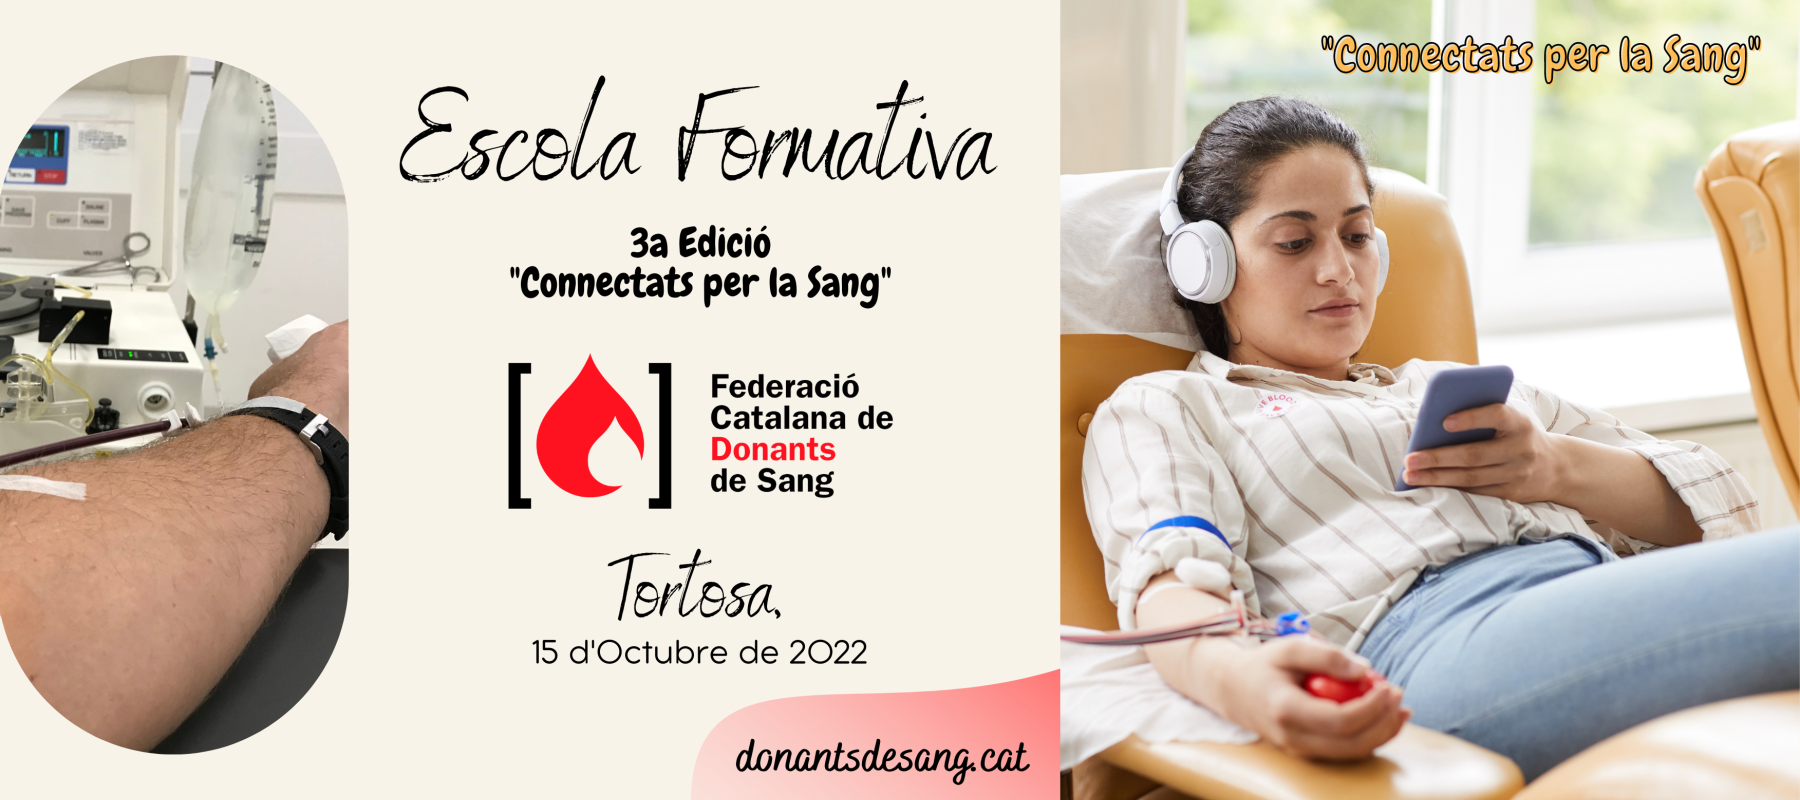 3a Edició de l'Escola Formativa de la Federació Catalana de Donants de Sang